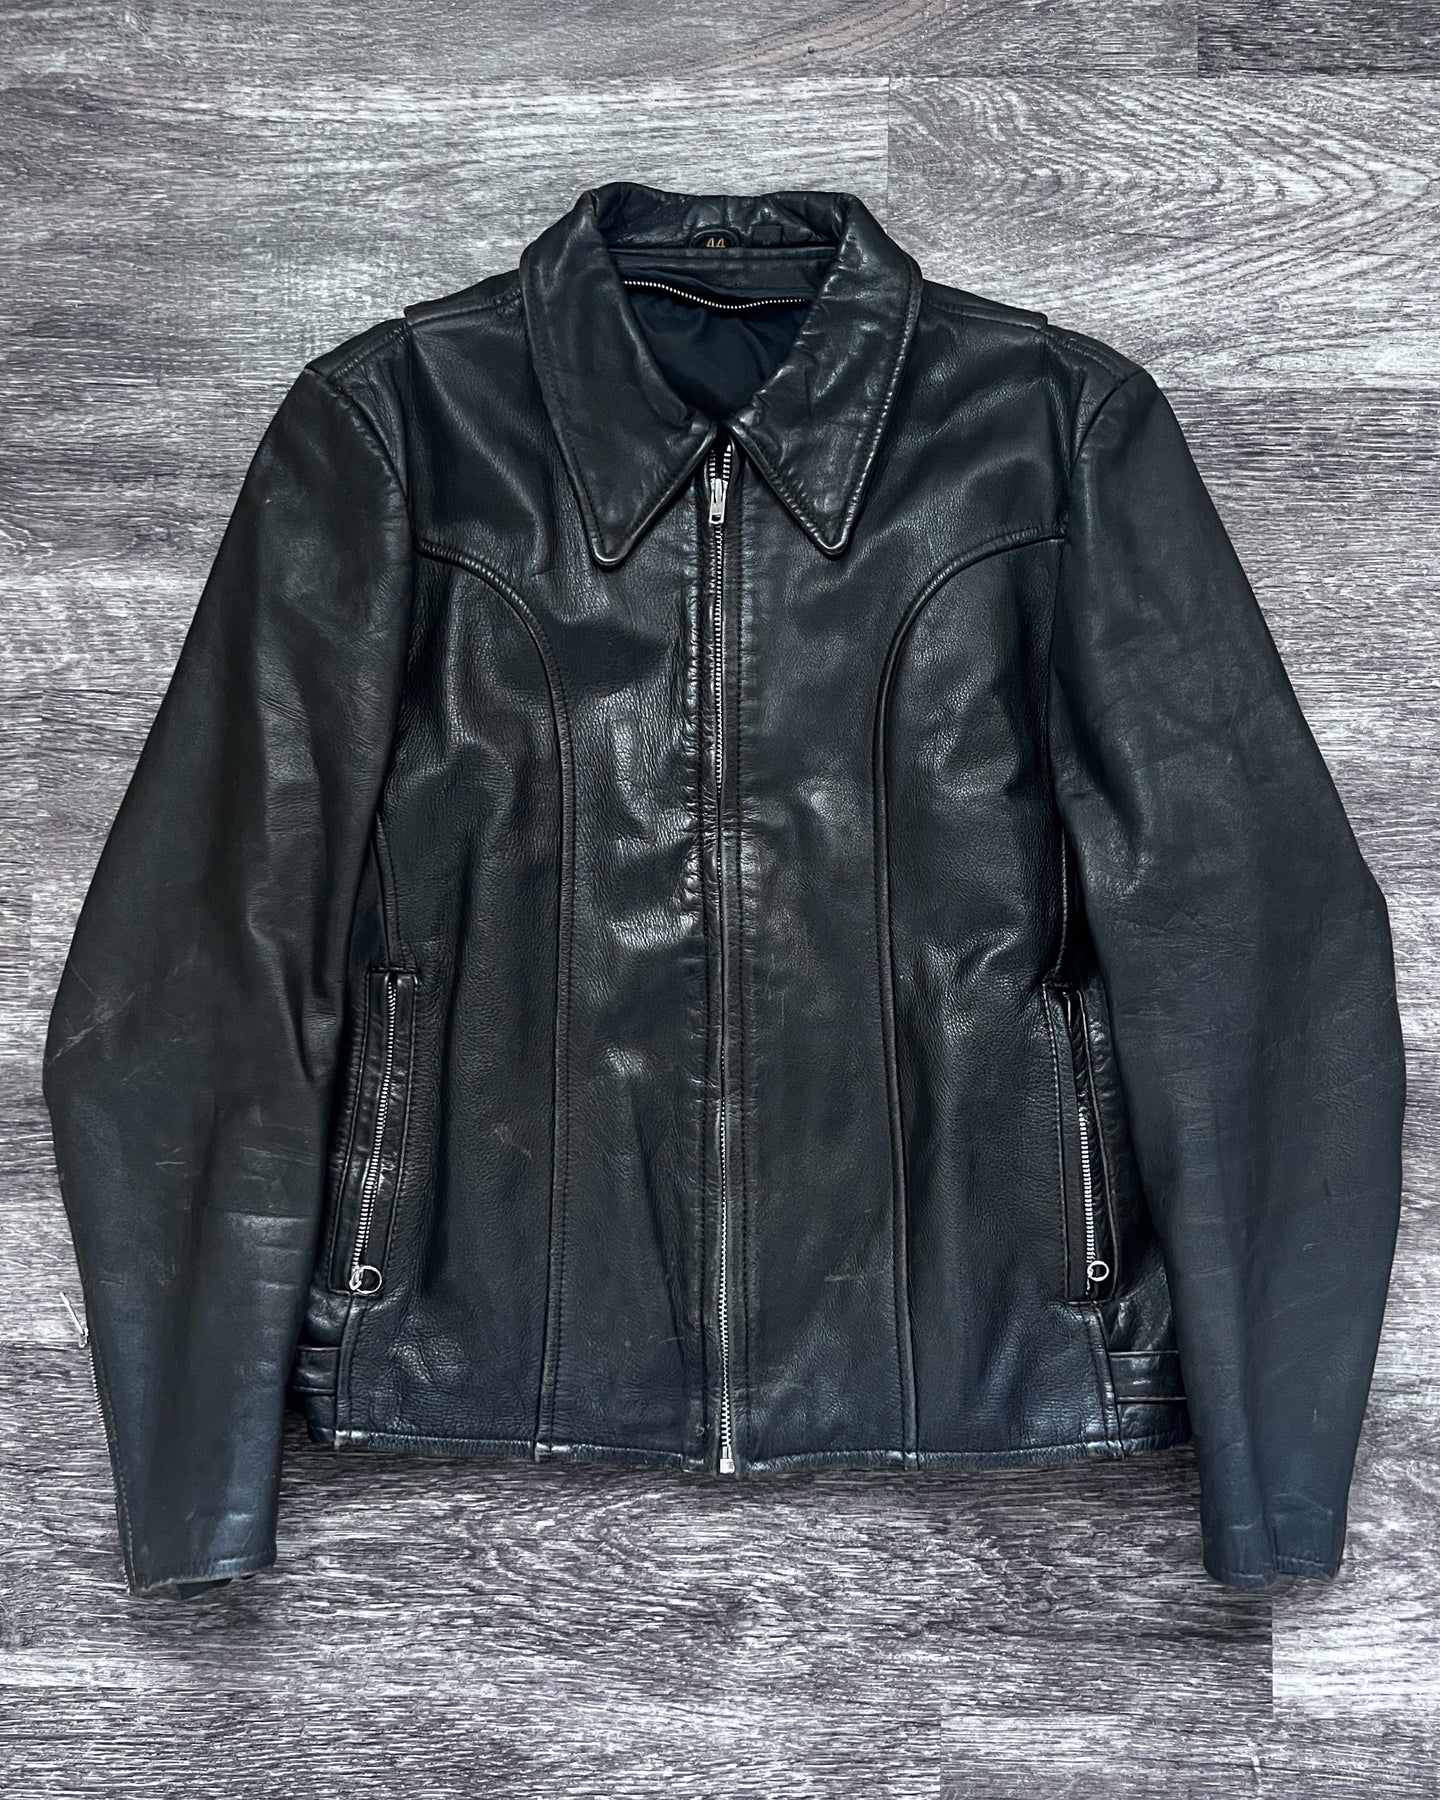 1980s Black Leather Jacket - Size Large